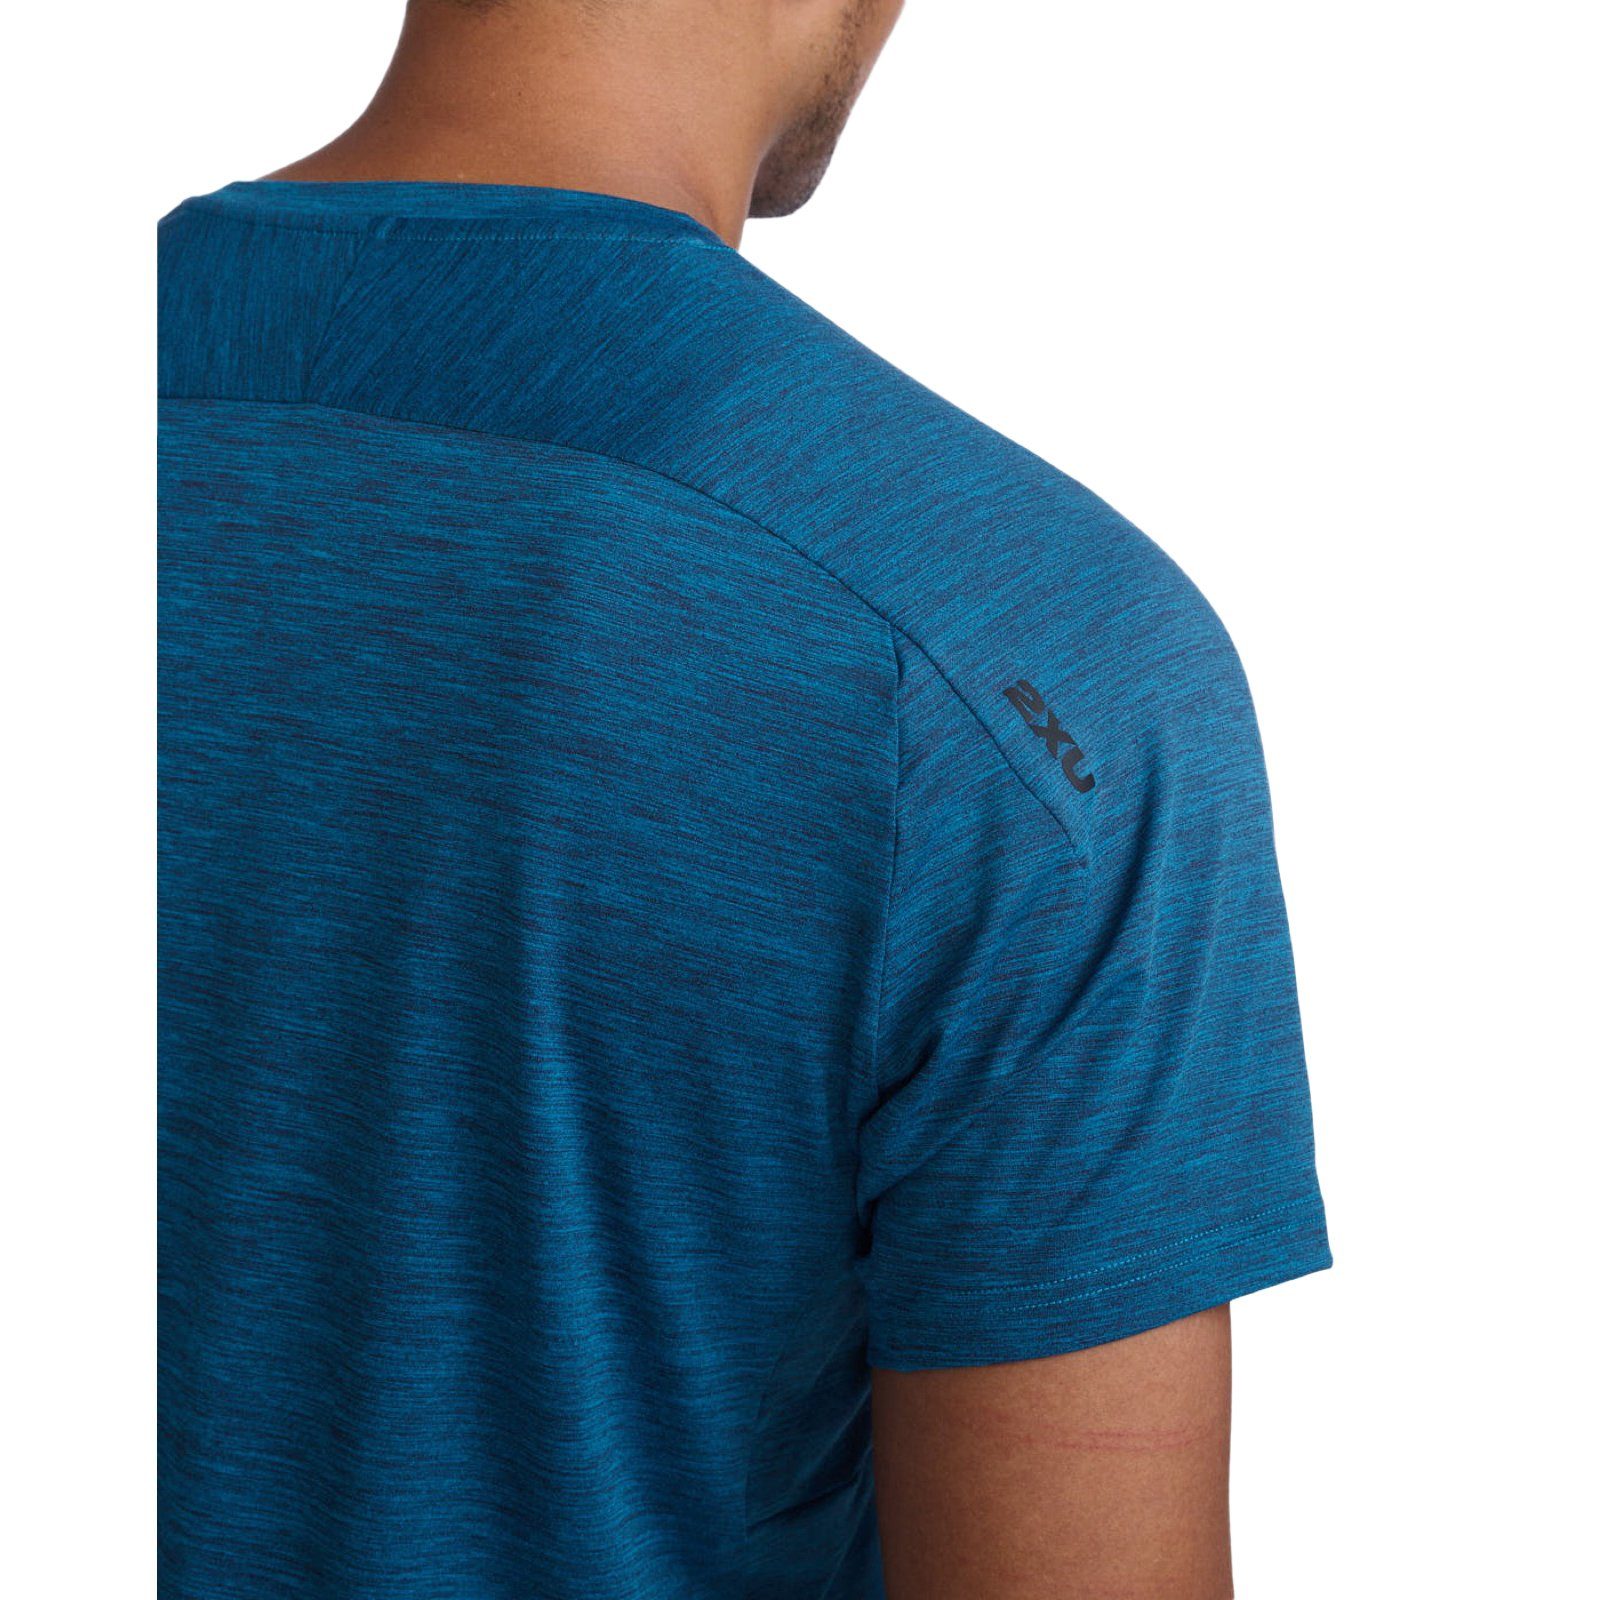 Bewegungsfreiheit 2xU Tee Trainingsshirt Celestial/Black strapazierfähiges Material Motion Laufshirt und